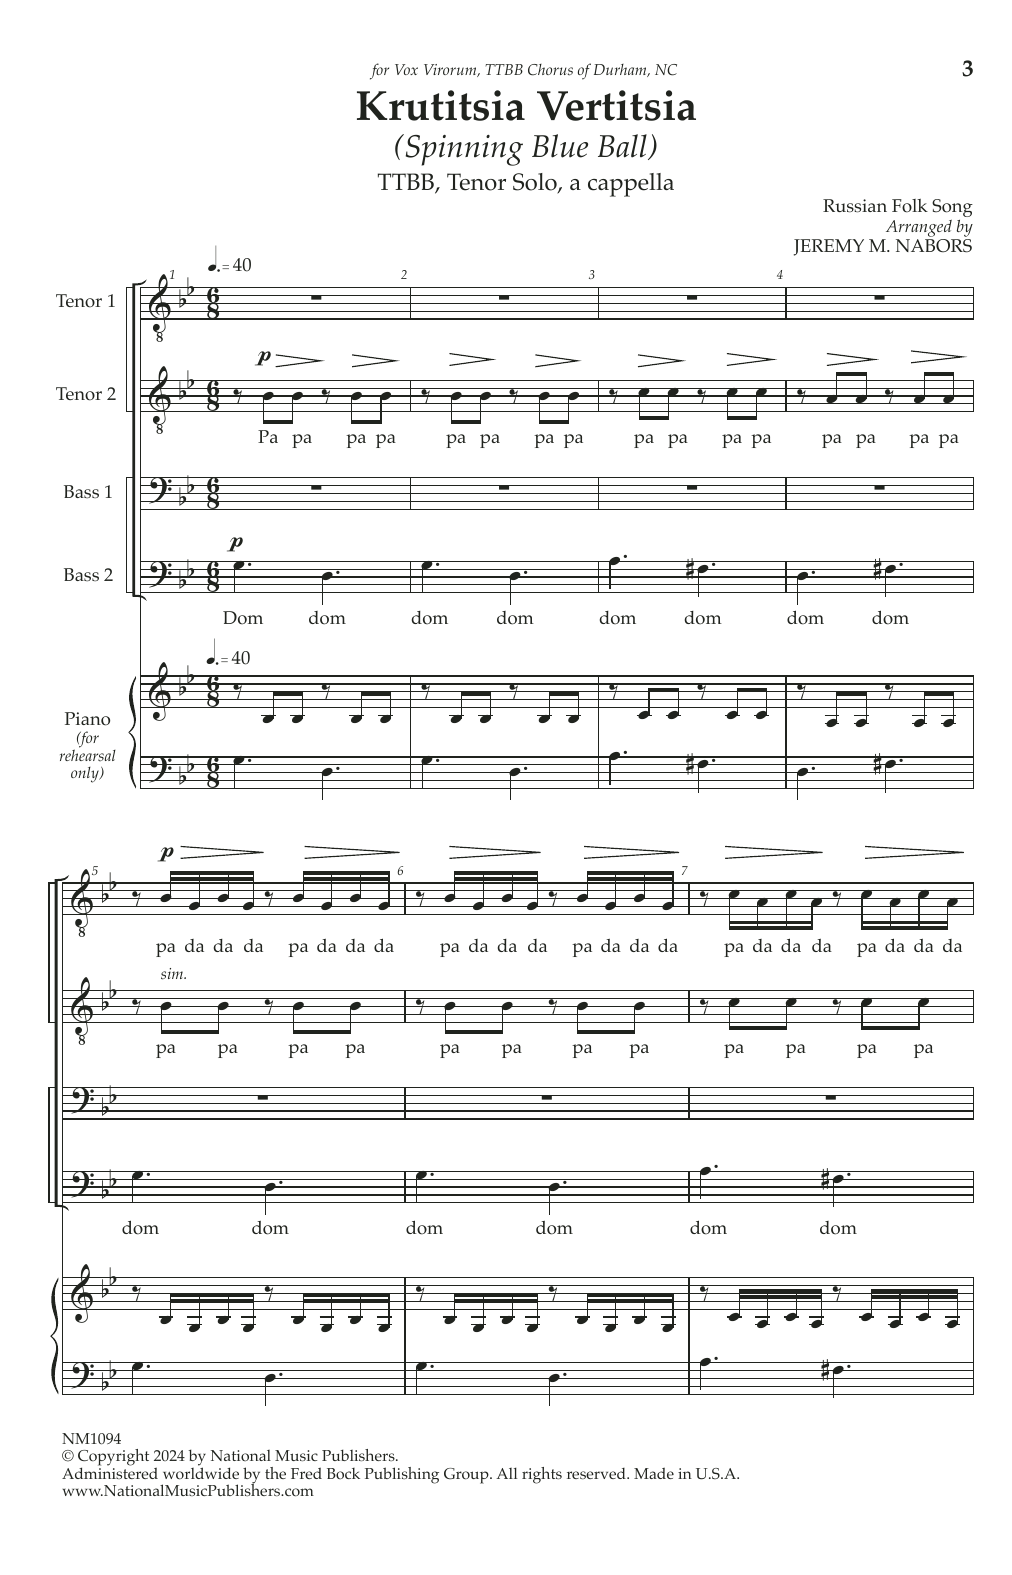 Jeremy Nabors Krutitsia Vertitsia sheet music notes and chords arranged for TTBB Choir